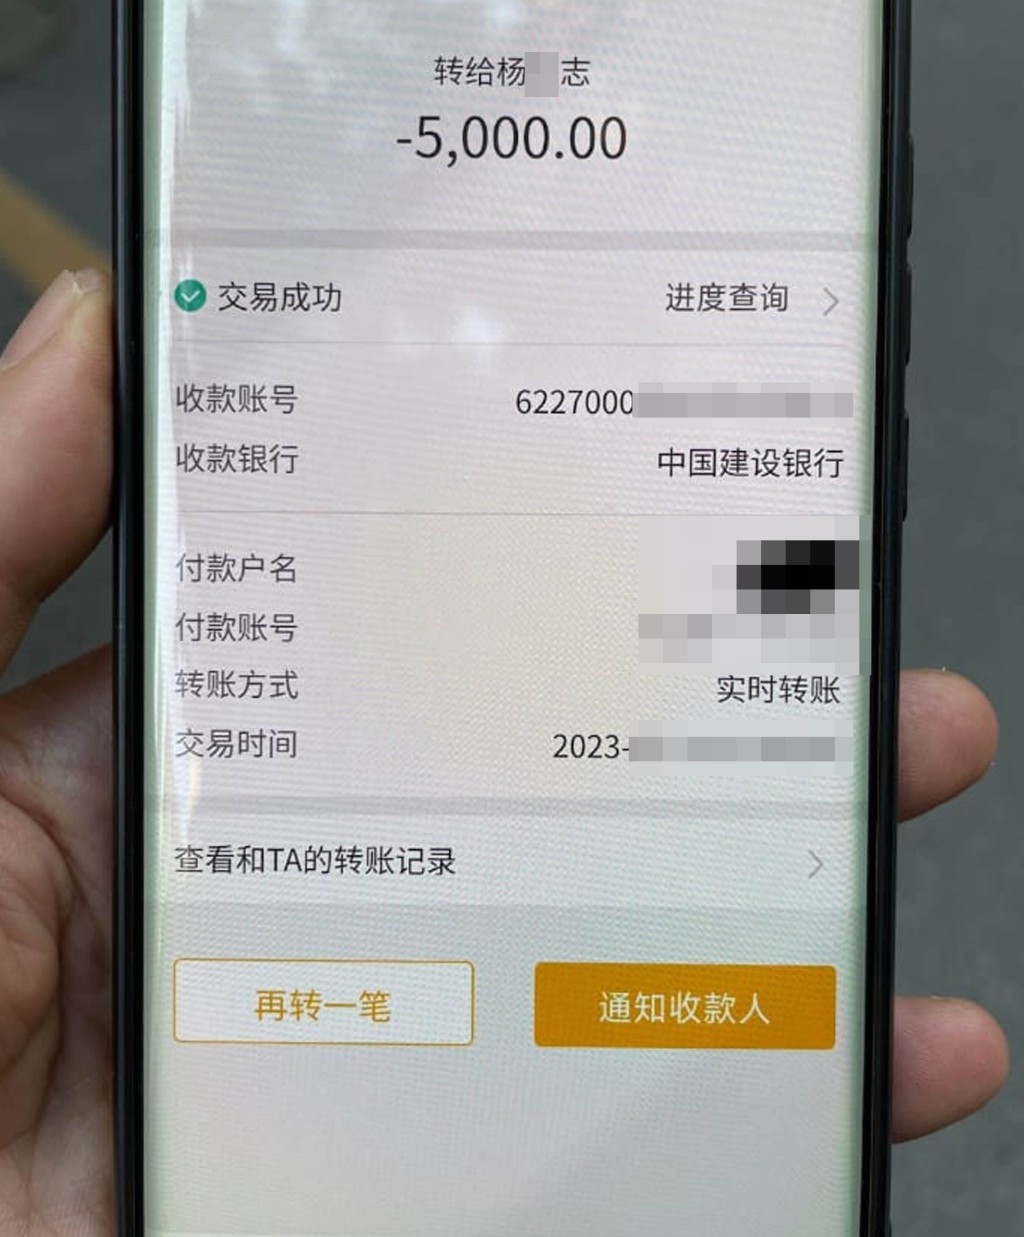 「黑工」B女士转帐5000元中介费订金予「易X仁家政服务部」负责人杨X志。